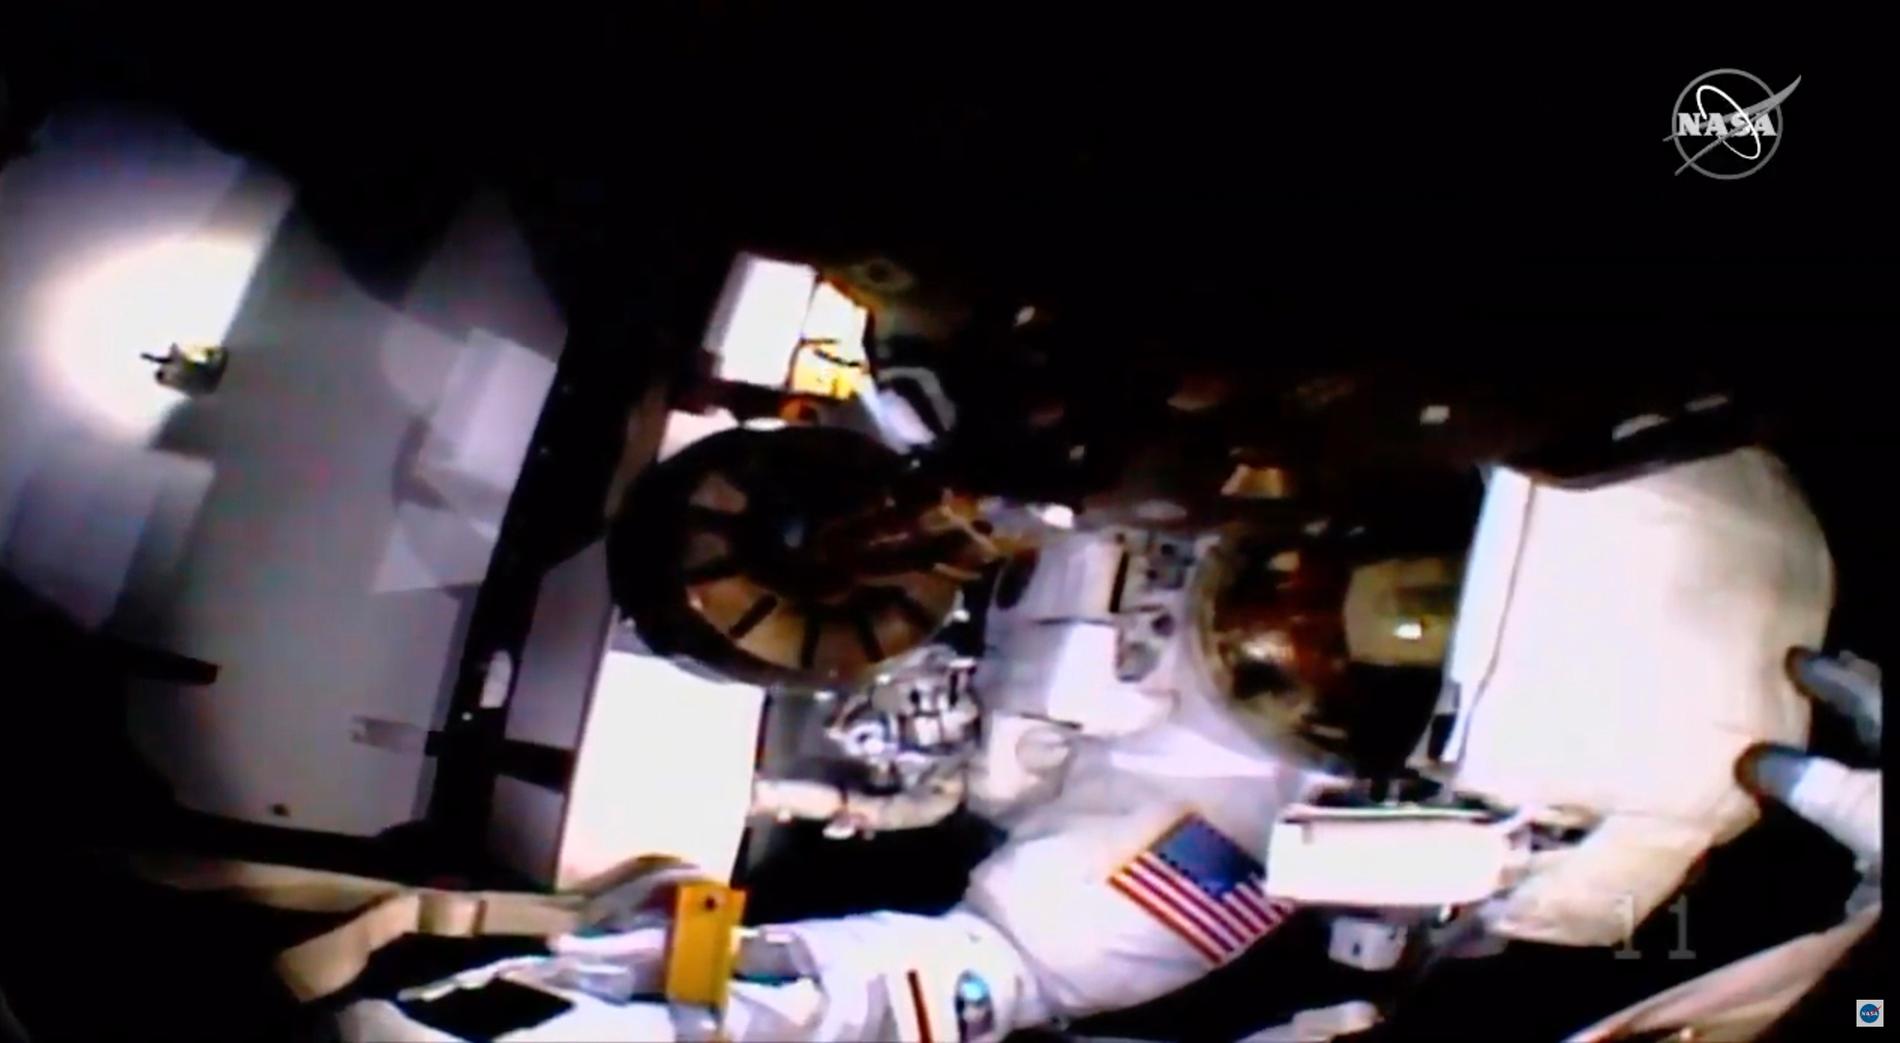 Här hjälps astronauterna år sedan videokameran och ljuset på Christina Kochs hjälm lossnat. Jessica Meirs handske syns till höger vid hjälmen.